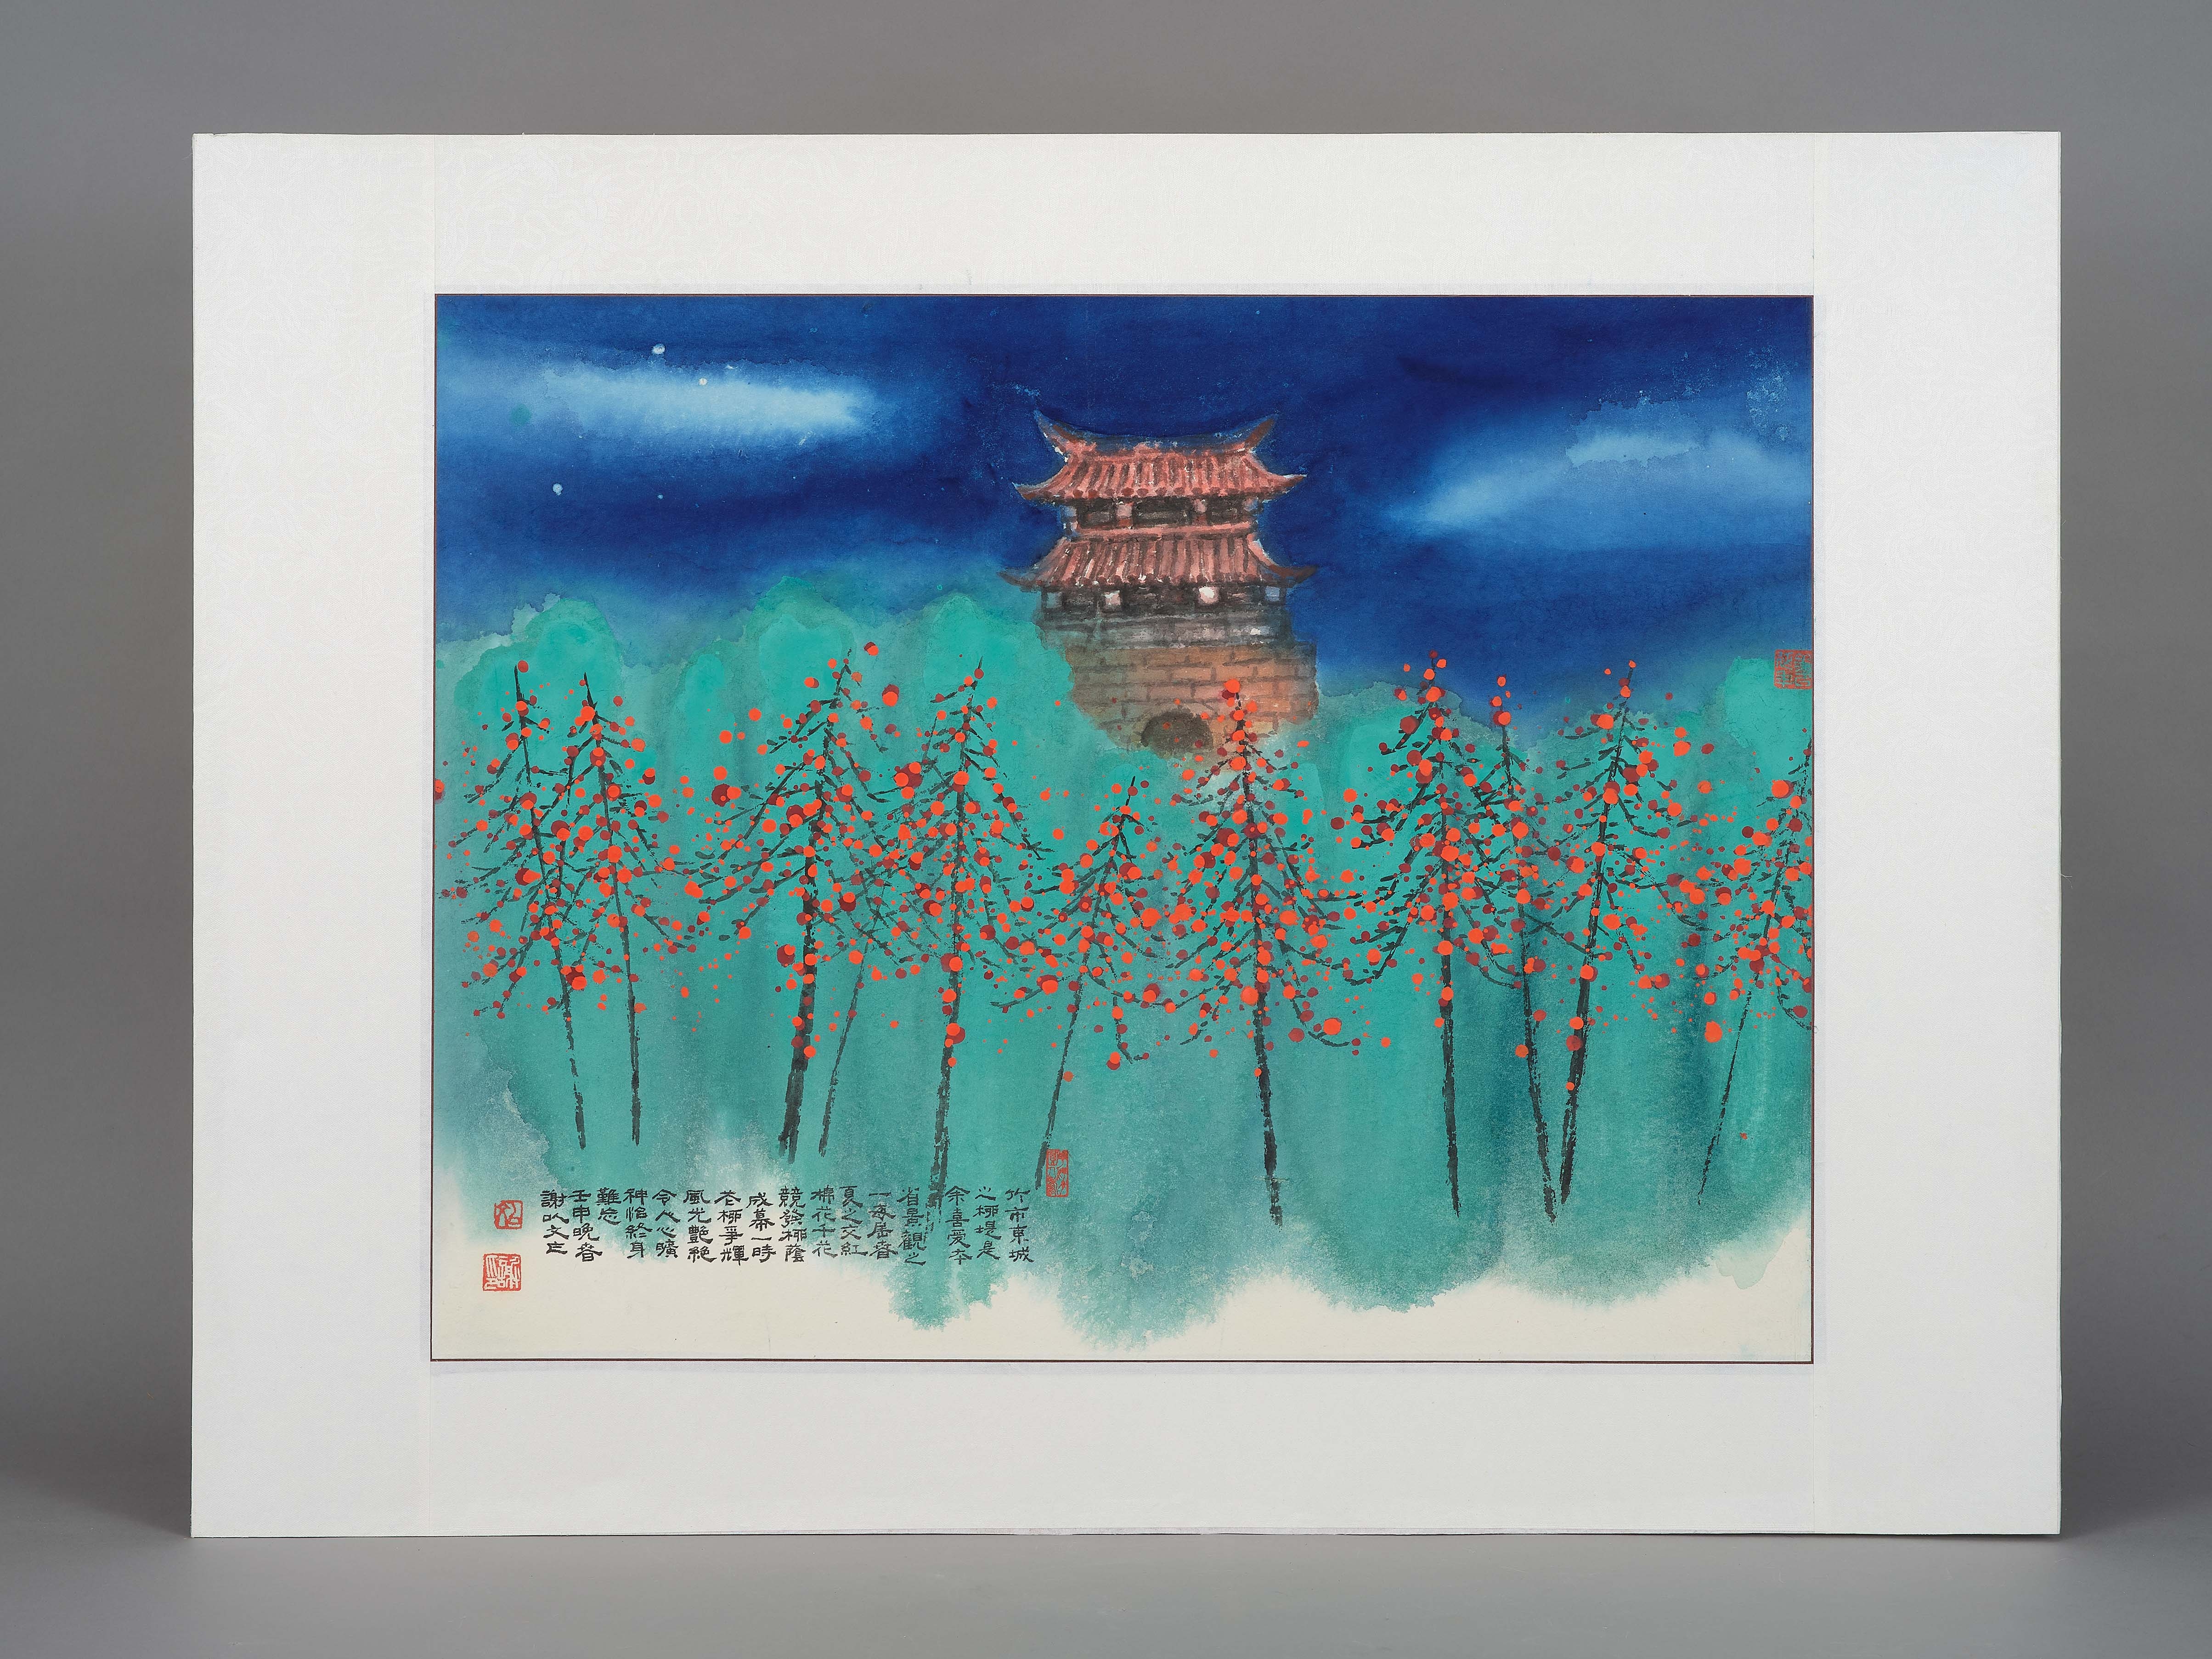 名稱:東門城|作者:謝以文|這是一件水墨重彩的作品，以新竹古蹟東門及周邊護城河的木棉柳堤為元素所進行的造境繪畫